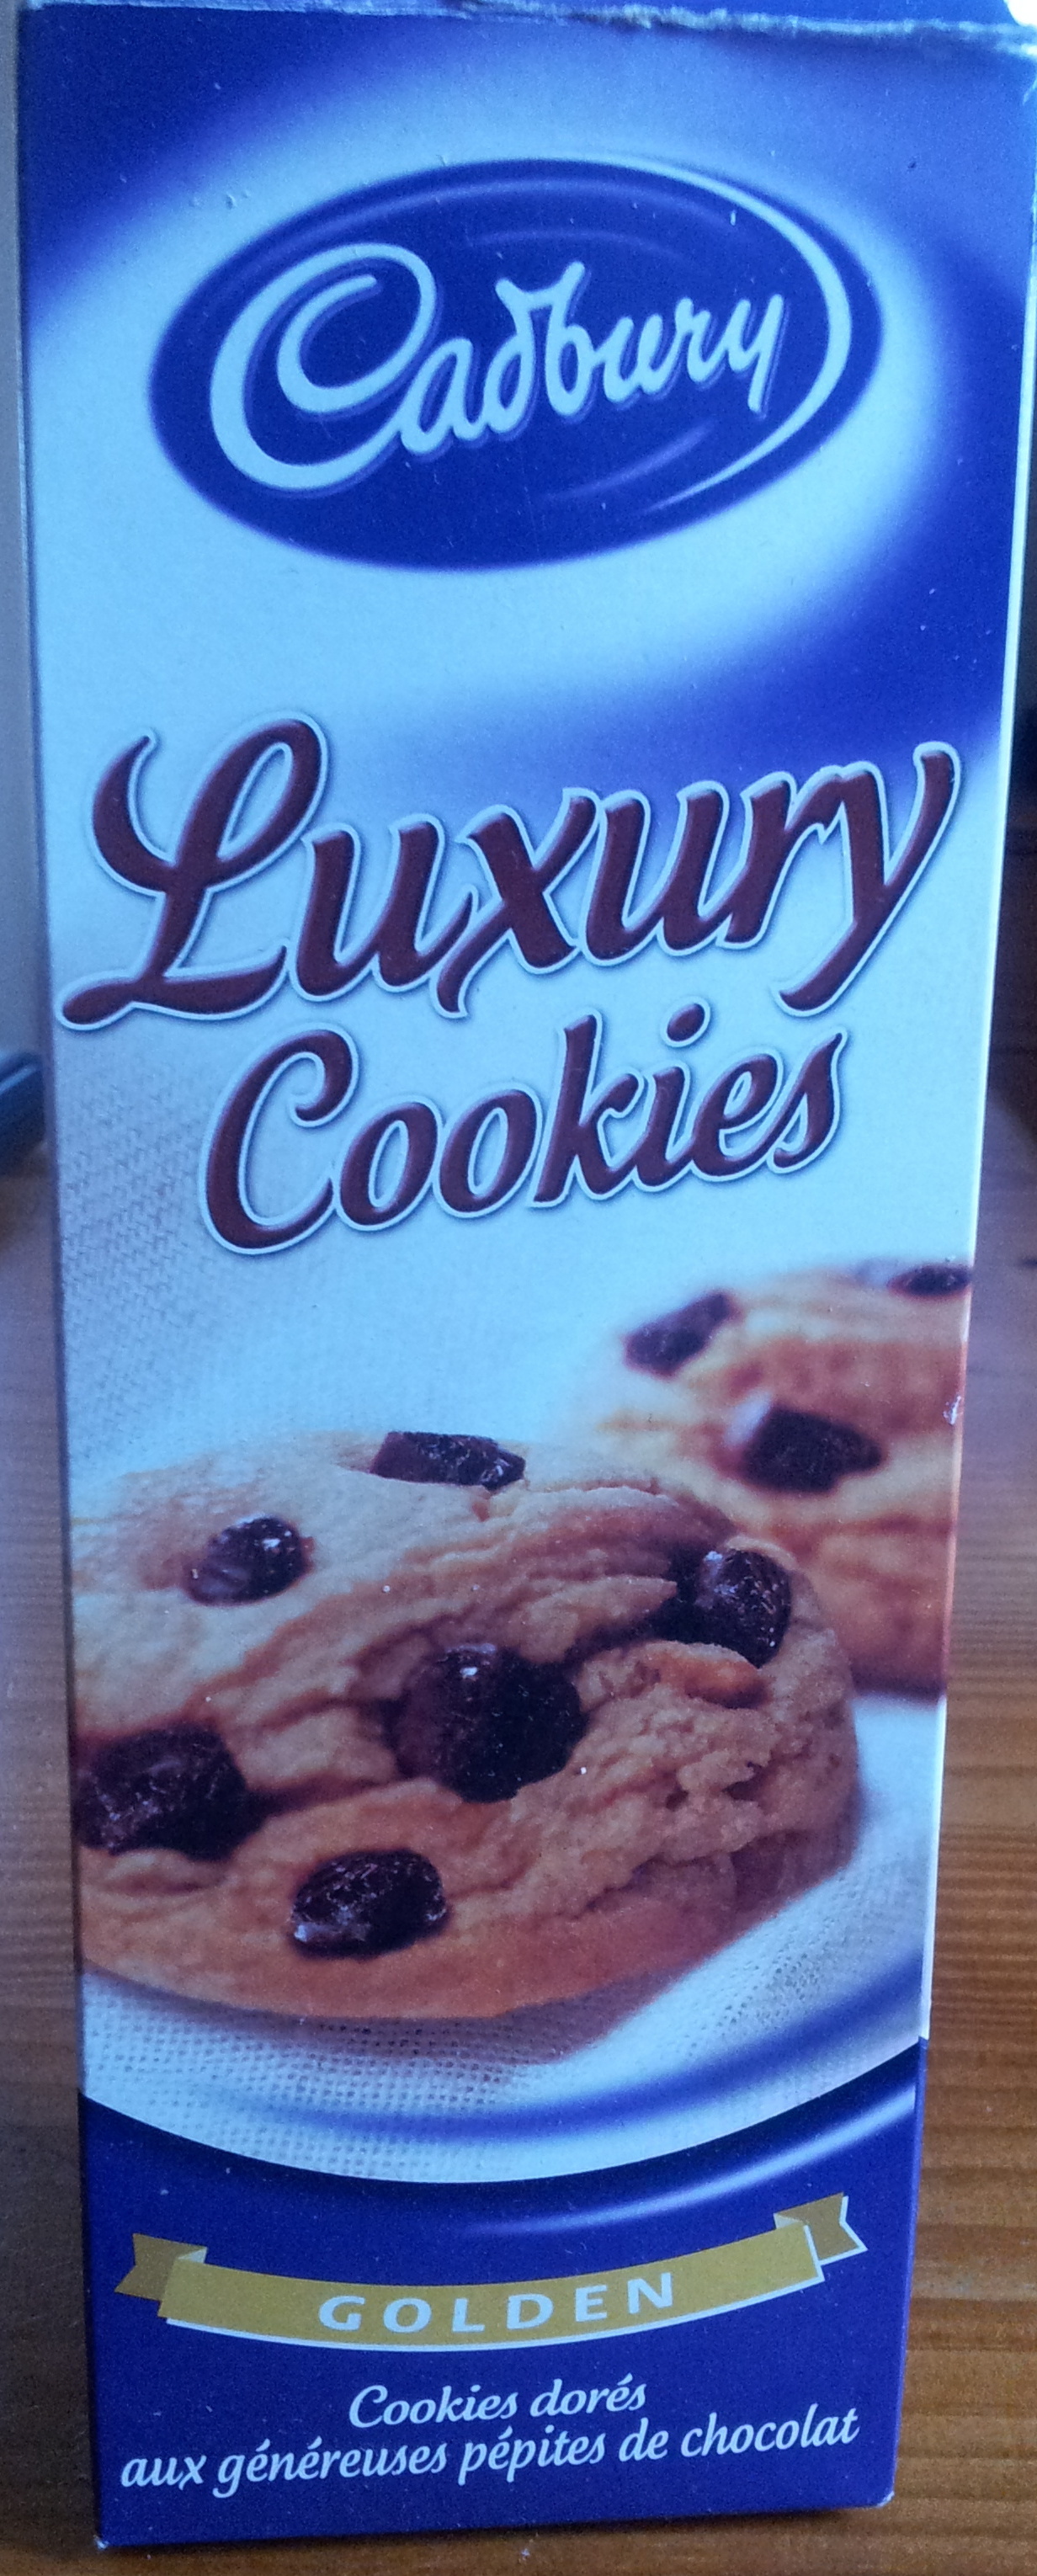 Luxury Cookies Golden - Product